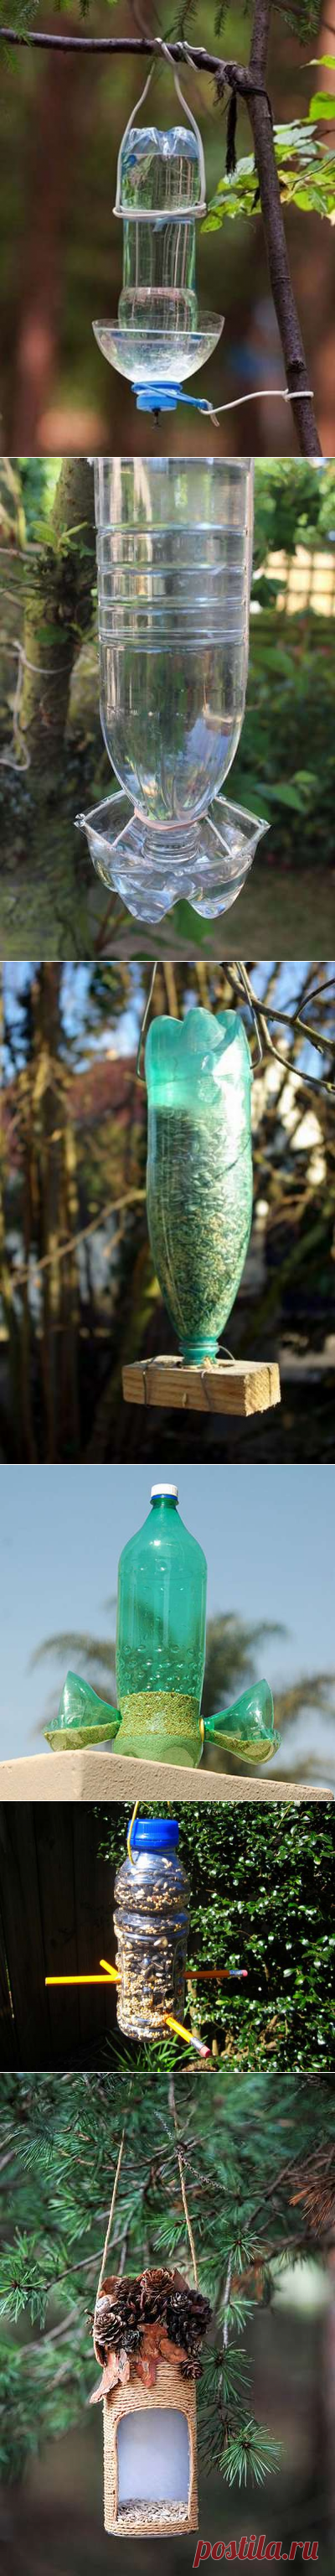 Кормушка для птиц из пластиковой бутылки 200 фото